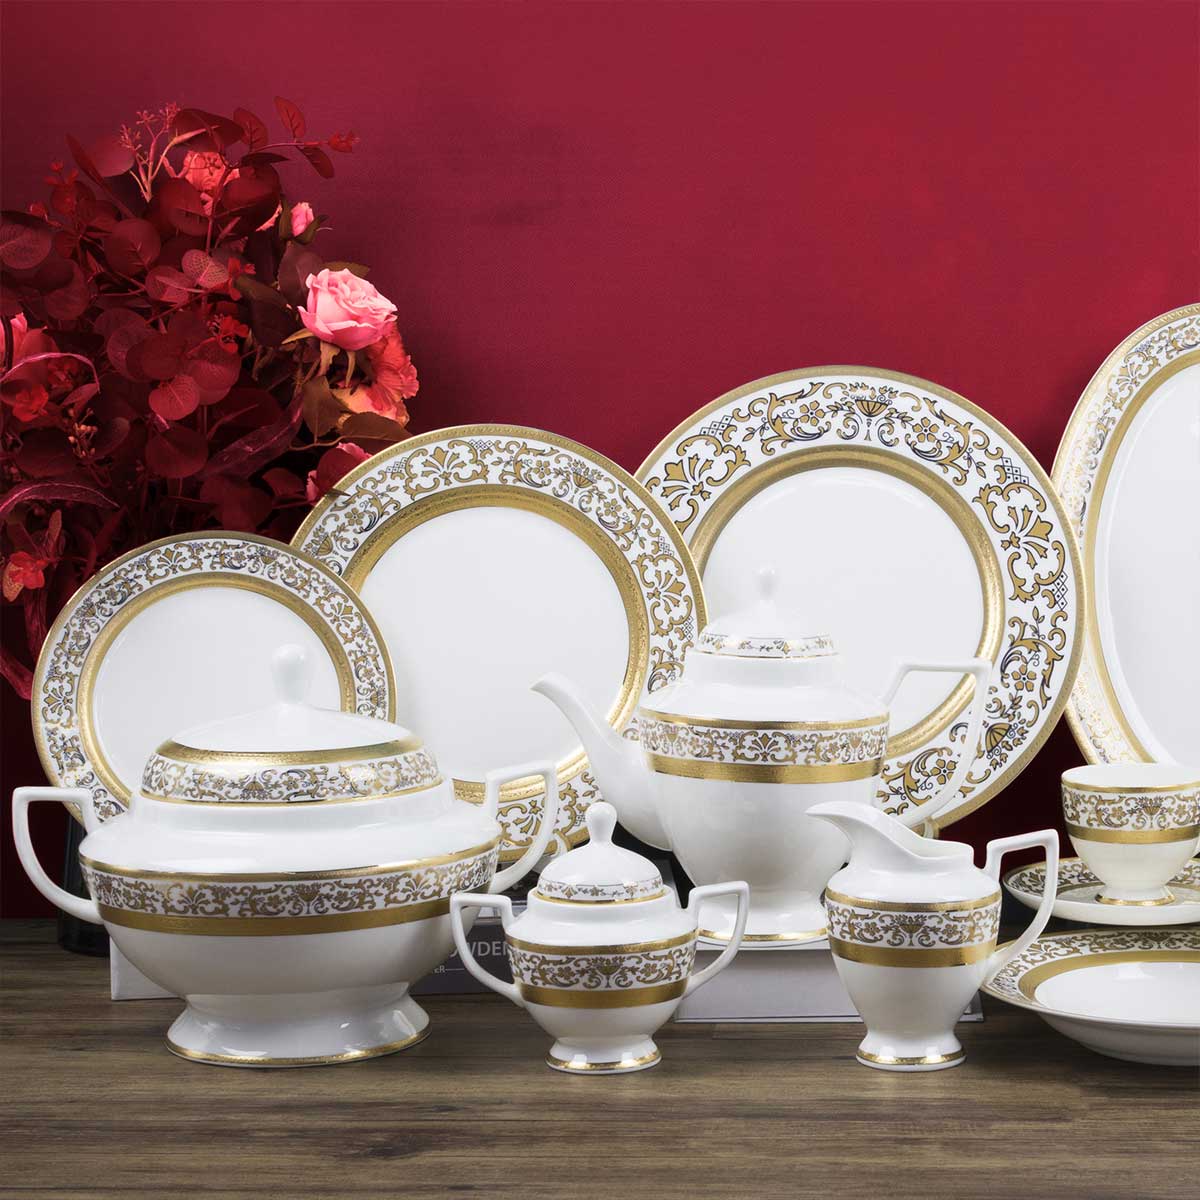 Servizio piatti classico con decoro in oro inciso fine bone china - Prestige